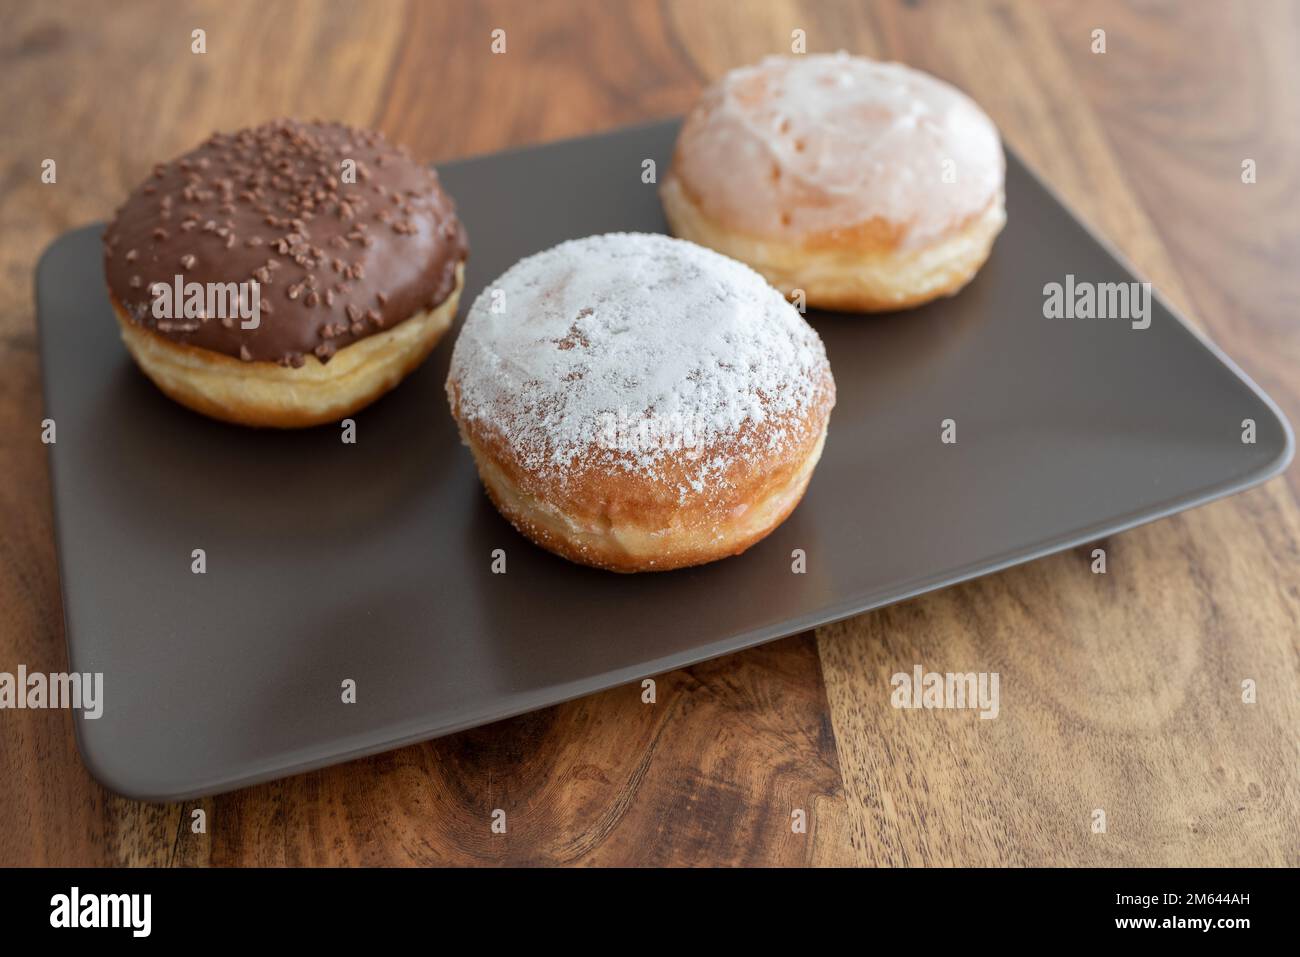 Blick aus dem hohen Winkel auf deutsche Donuts, bekannt als Berliner, mit verschiedenen Füllungen und Vereisungen auf der Platte Stockfoto